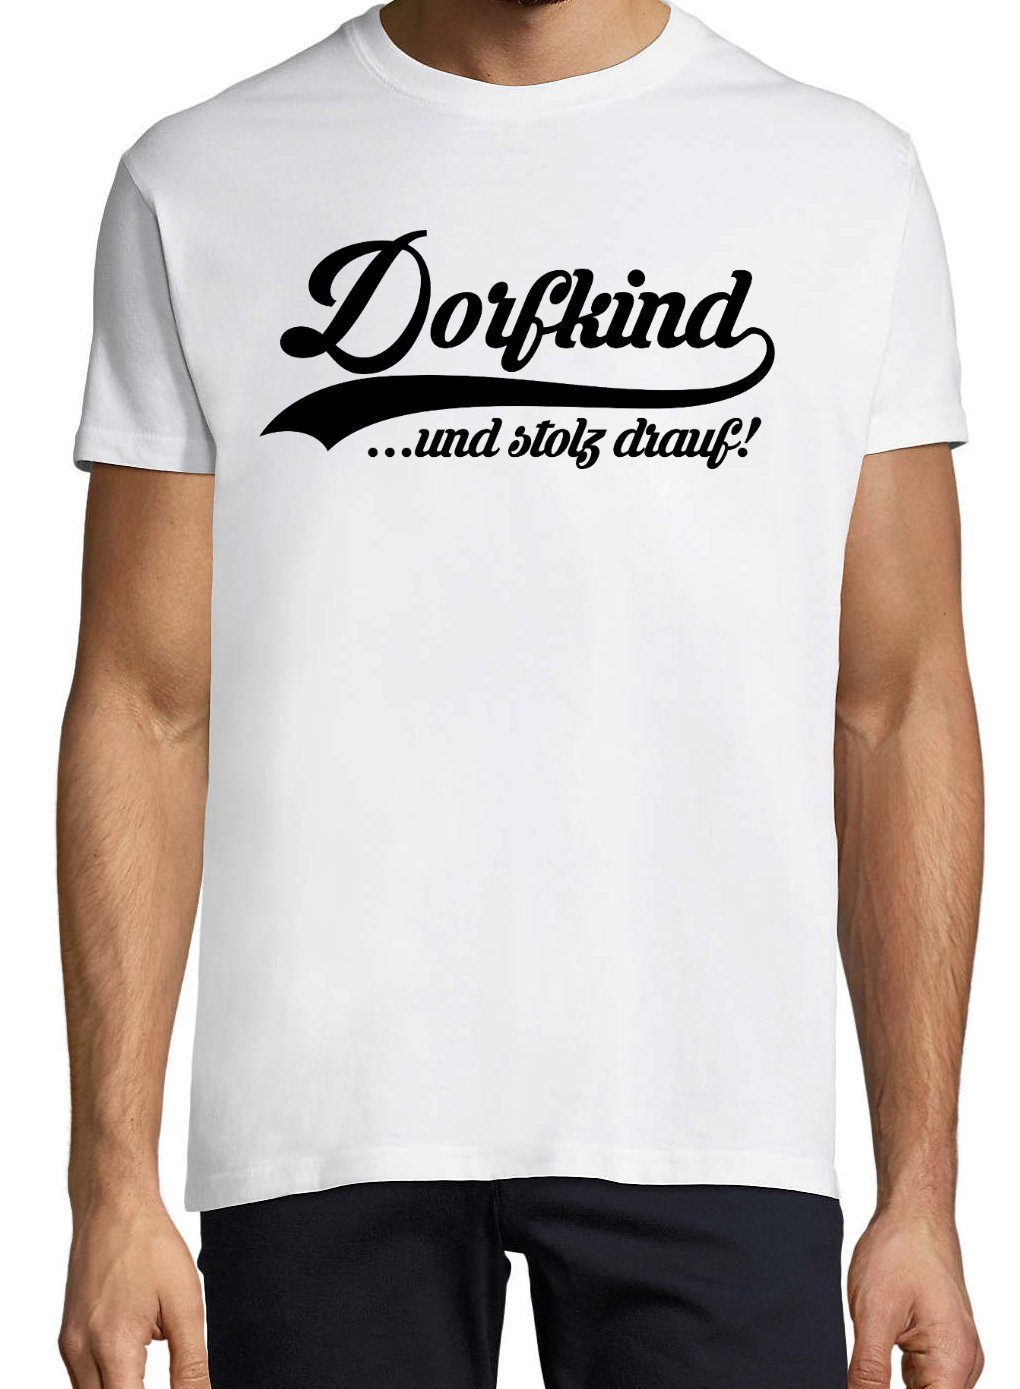 lustigem Youth Herren Spruch Print-Shirt Dorfkind T-Shirt mit Designz Weiß